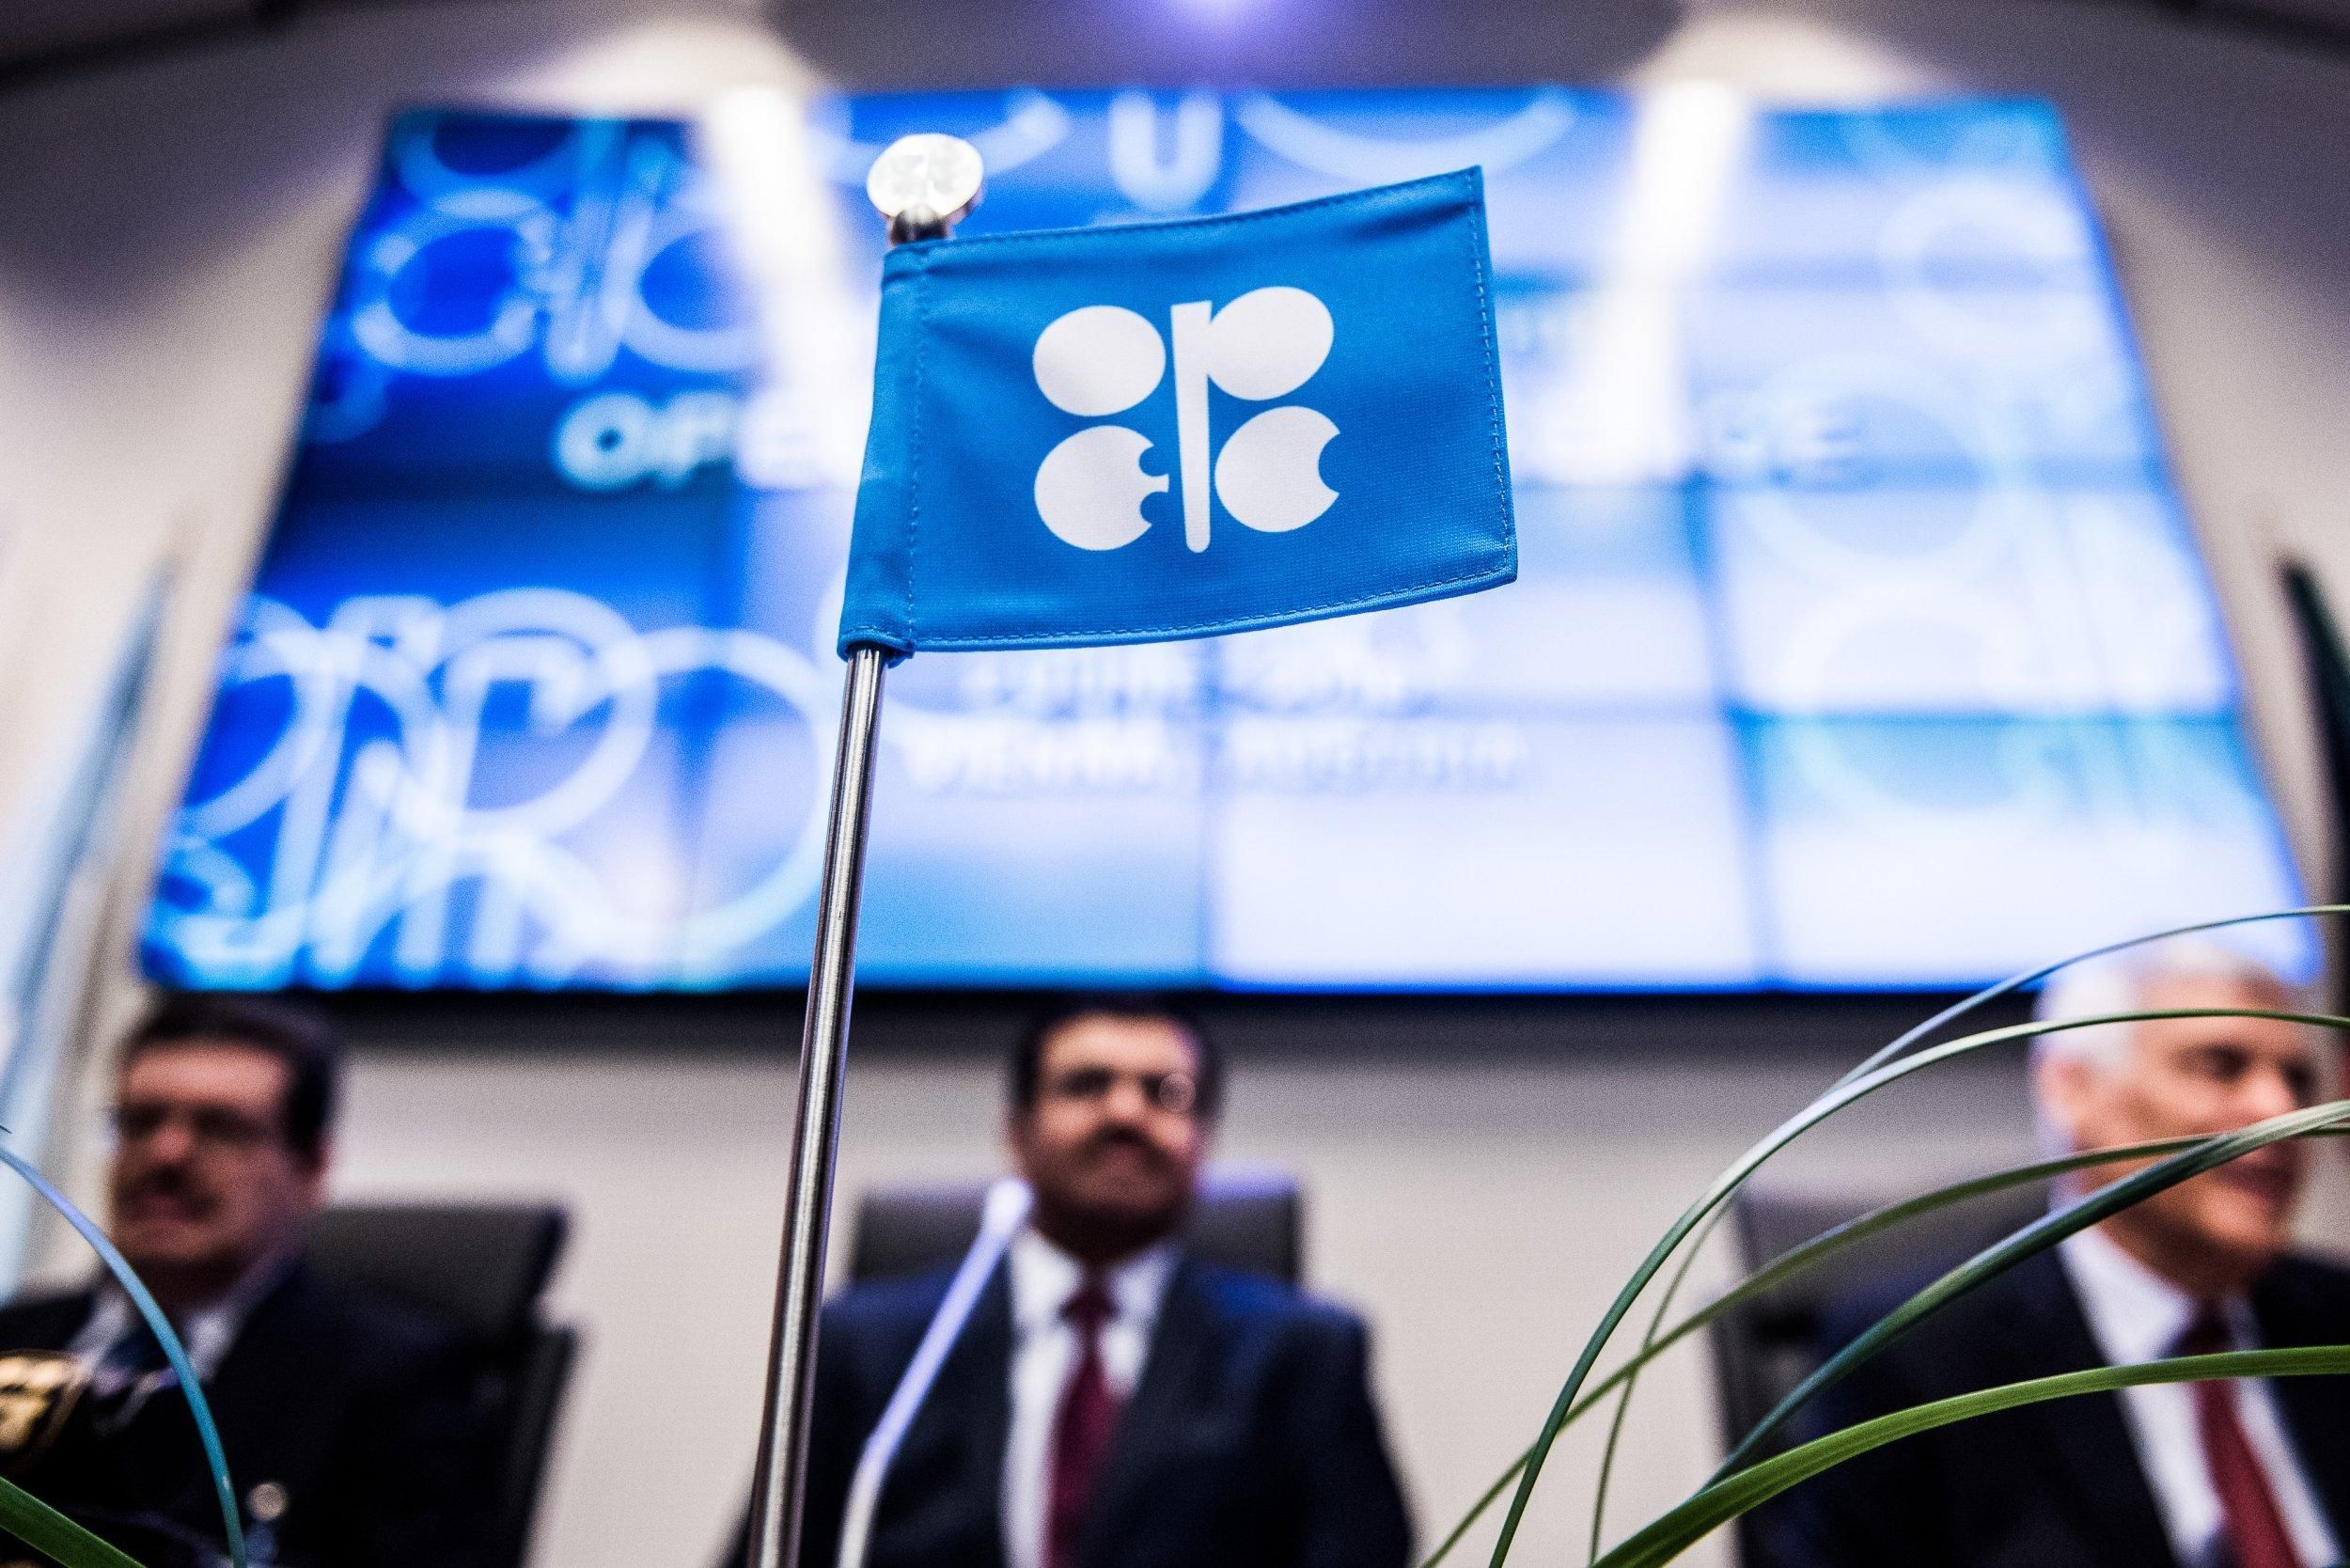 ОПЕК може звільнити Росію від угоди про нафтові цілі: як це може вплинути на ринок